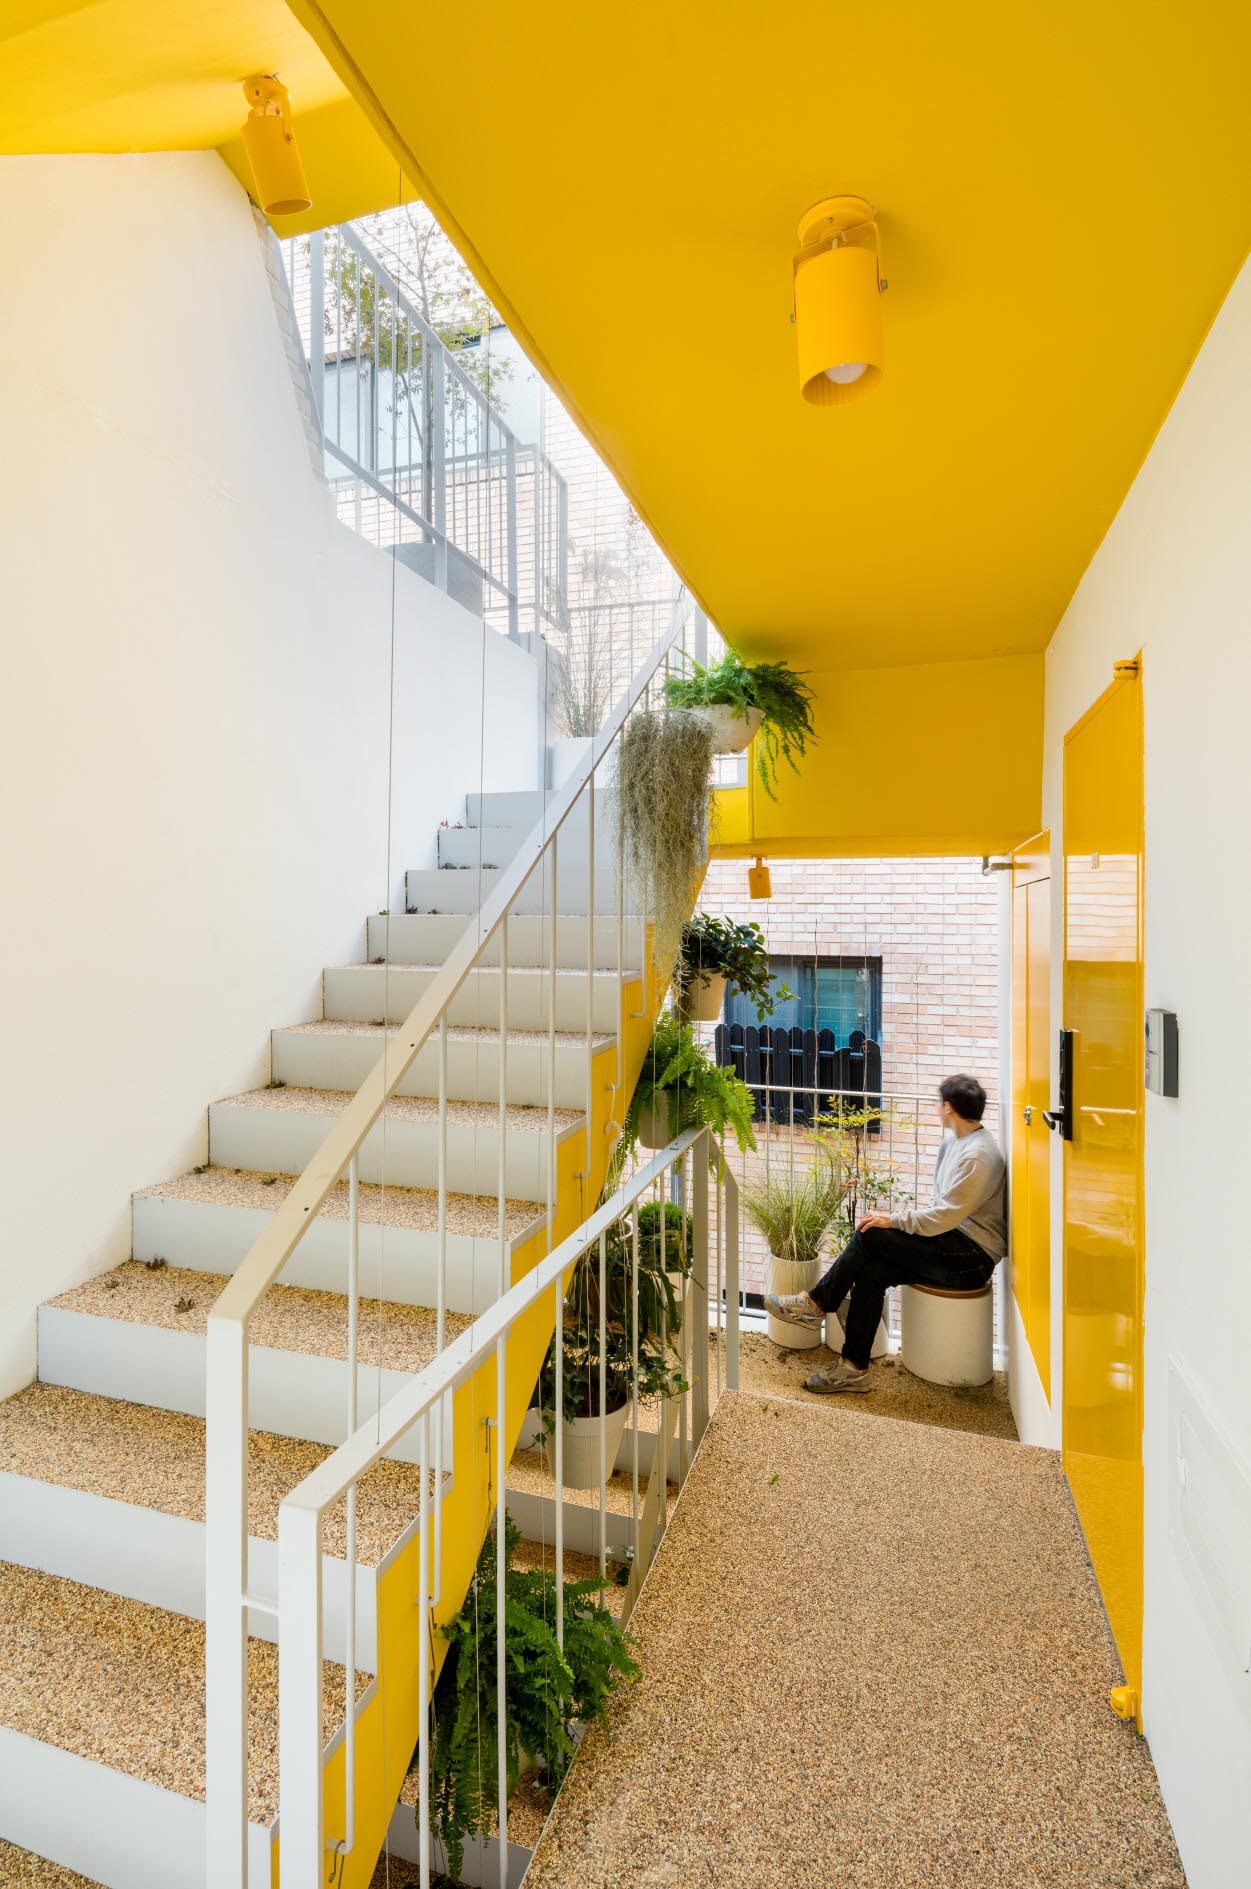 Một tòa nhà chung cư hiện đại có điểm nhấn màu vàng ở cầu thang.